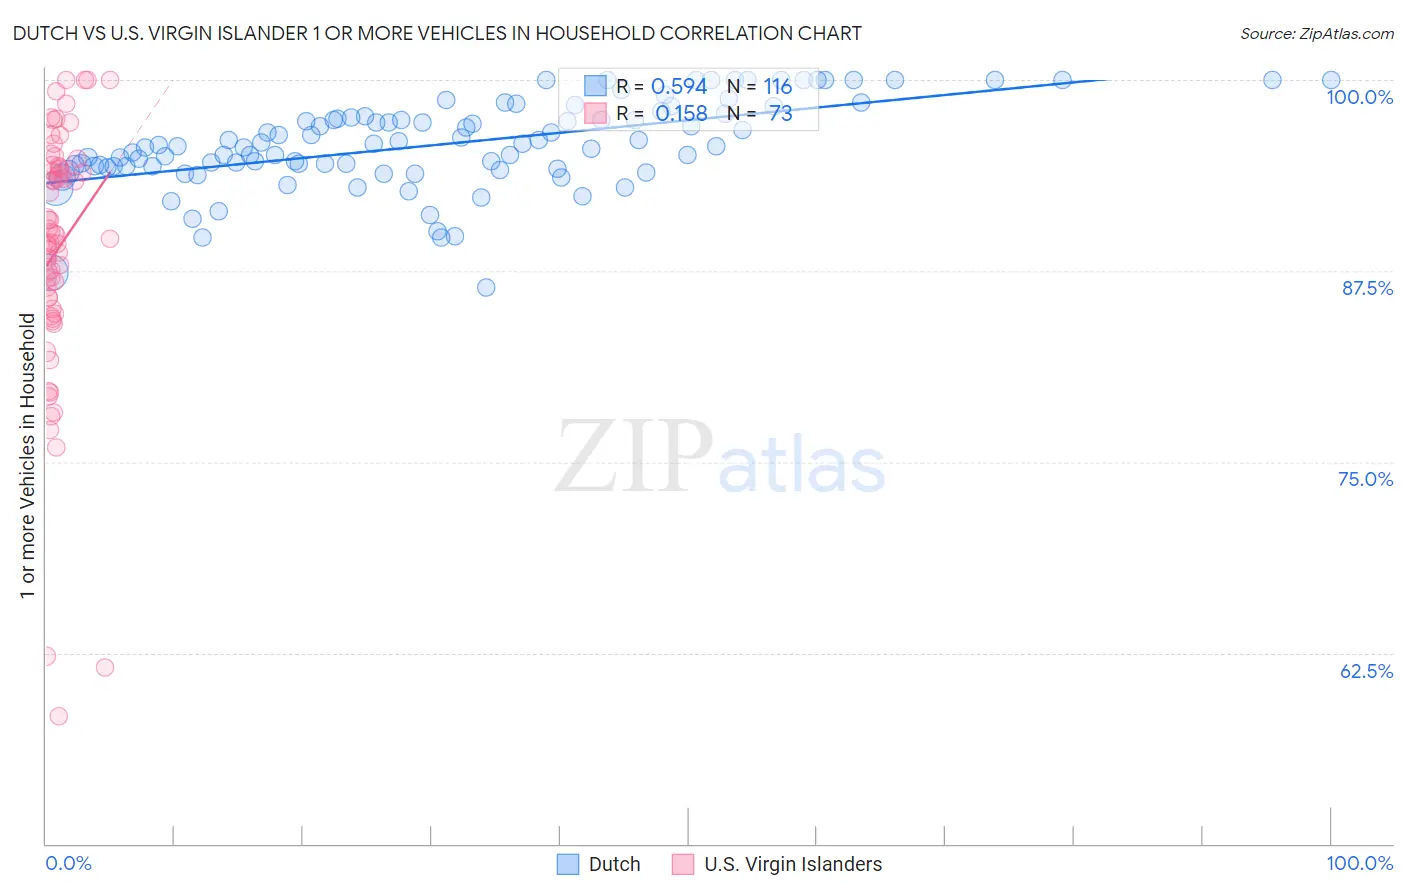 Dutch vs U.S. Virgin Islander 1 or more Vehicles in Household